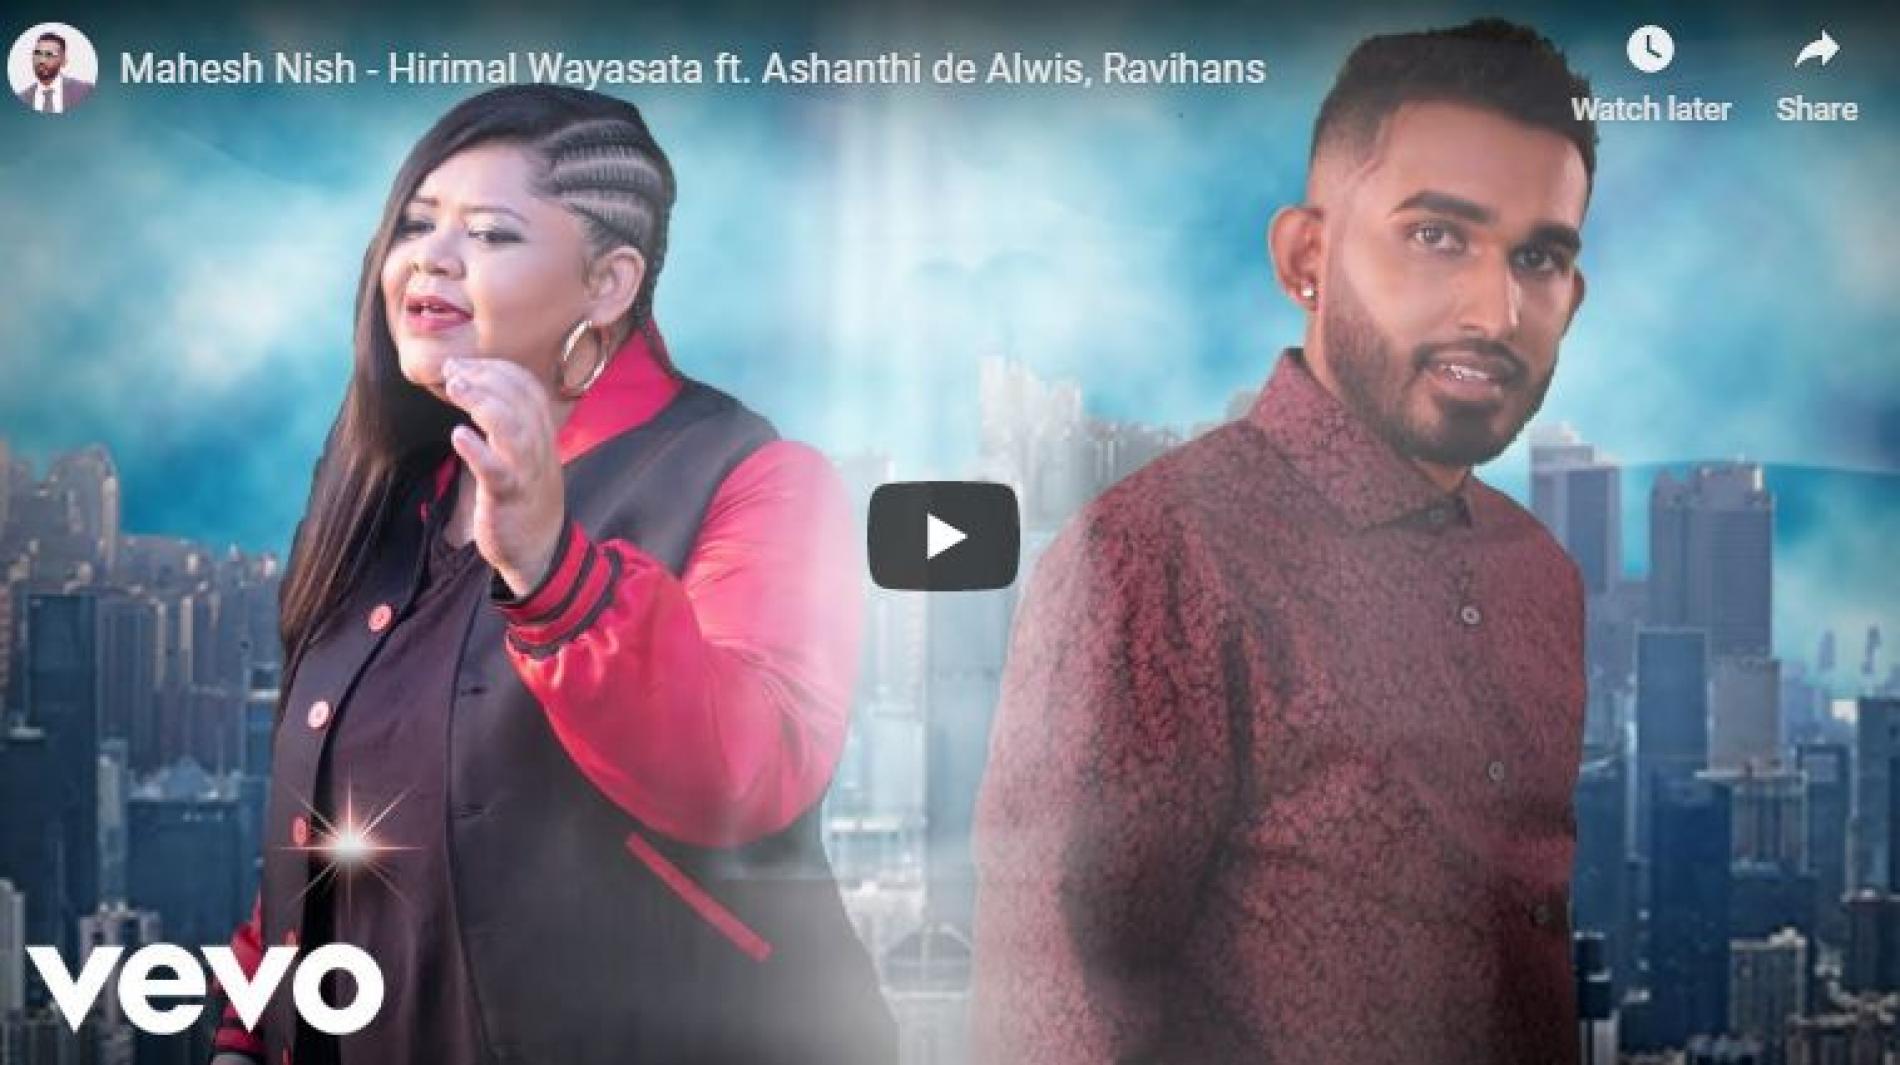 Mahesh Nish – Hirimal Wayasata ft Ashanthi de Alwis, Ravihans